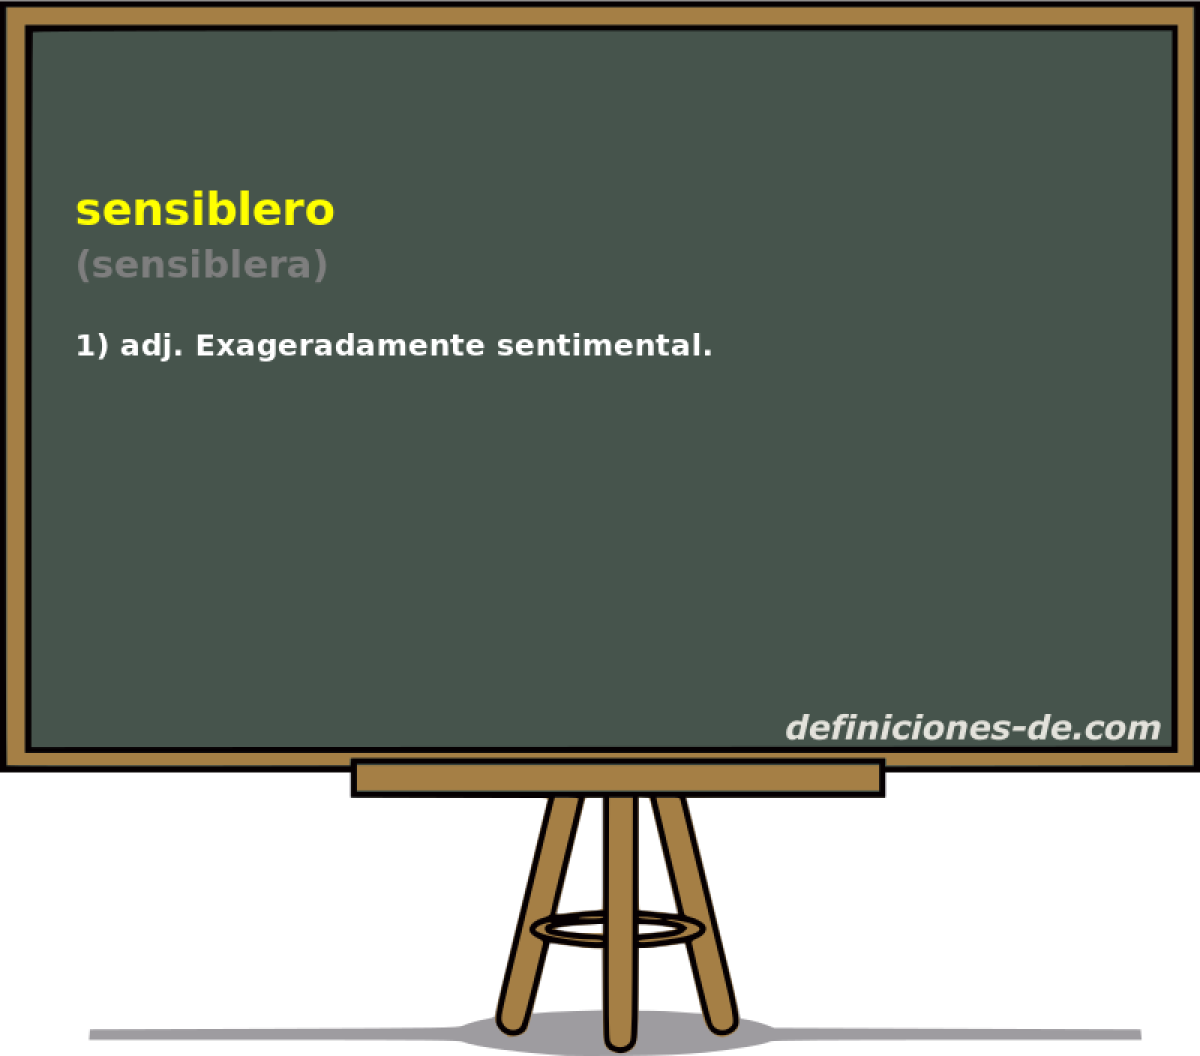 sensiblero (sensiblera)